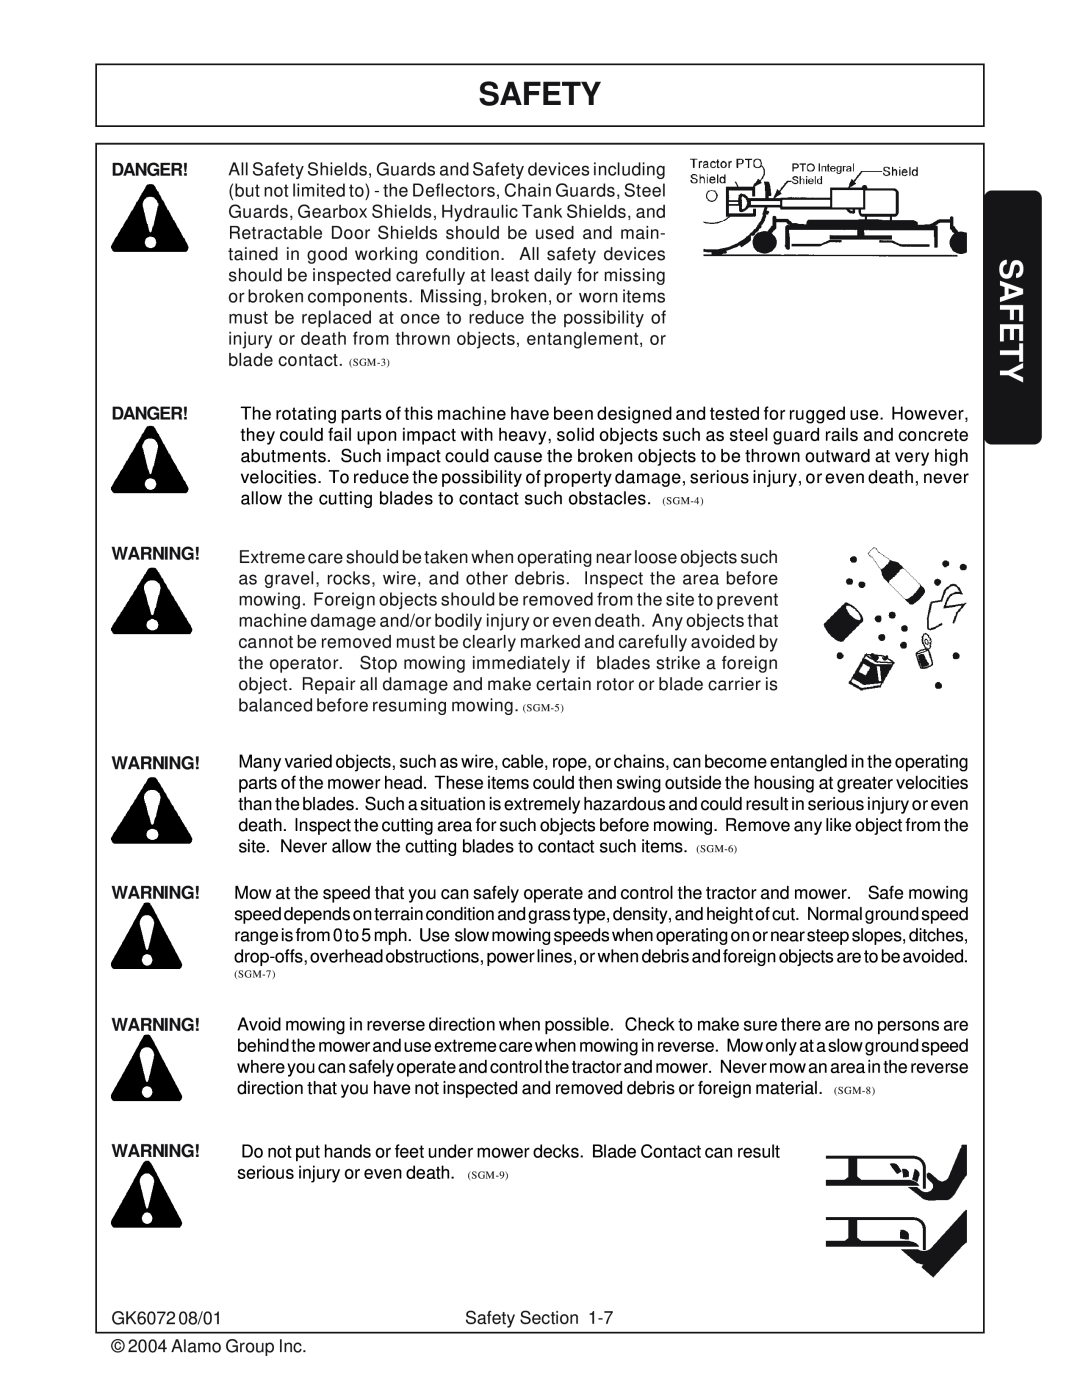 Rhino Mounts manual Safety, Danger Danger, GK6072 08/01 2004 Alamo Group Inc 